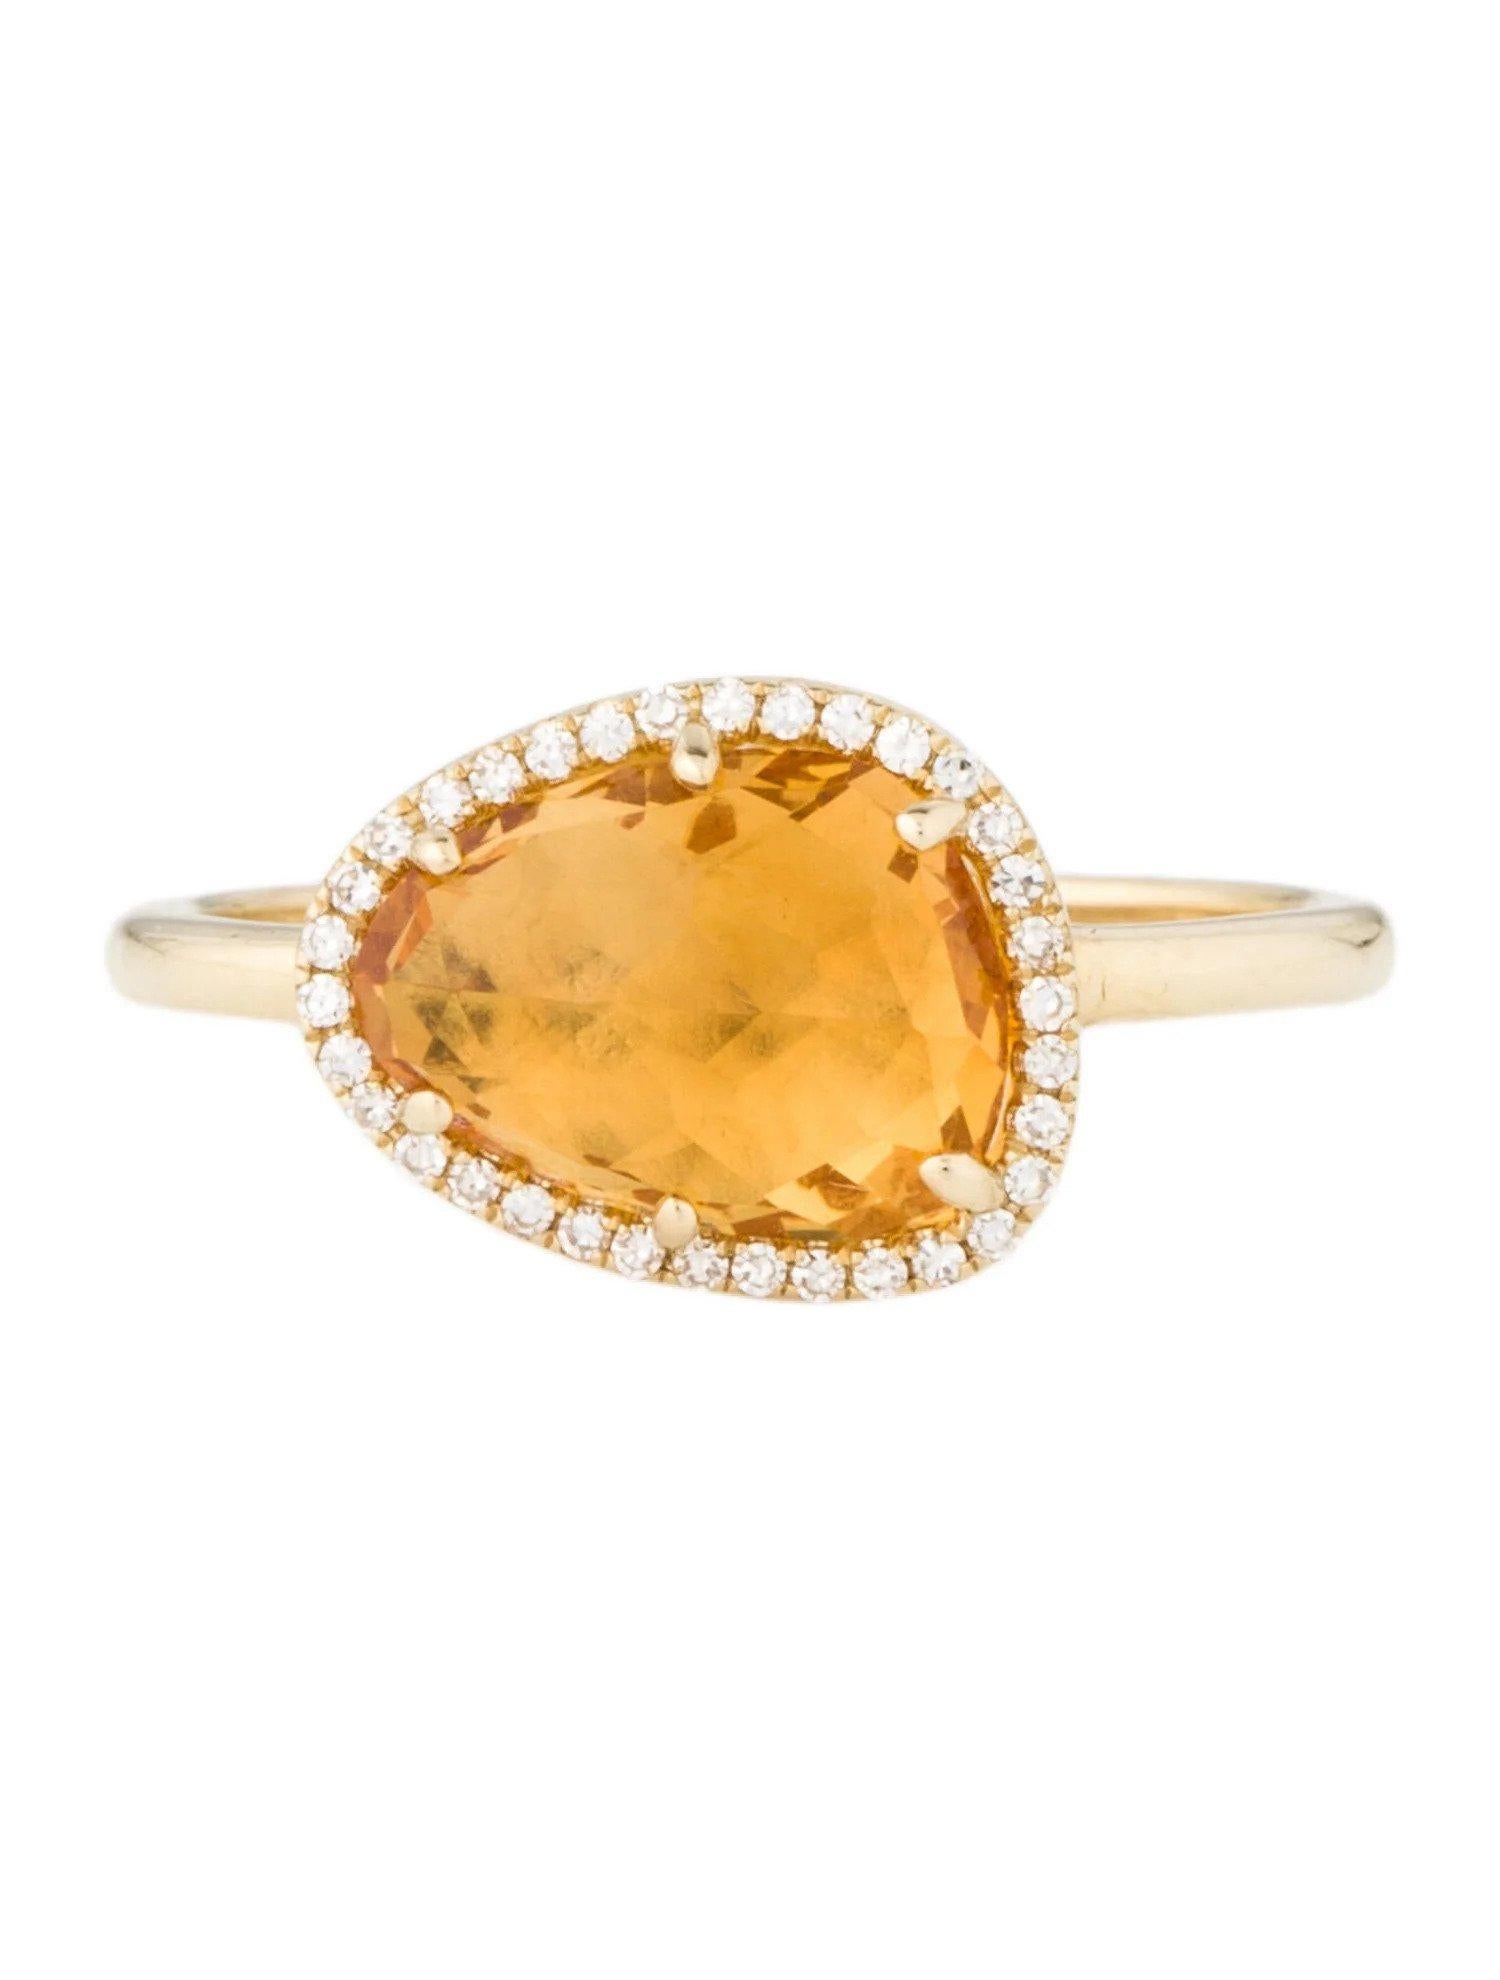 Dieser Ring aus Citrin und Diamant ist ein atemberaubendes und zeitloses Accessoire, das jedem Outfit einen Hauch von Glamour und Raffinesse verleihen kann. 

Dieser Ring zeigt einen 2,03 Karat Citrin im Mischschliff (12 x 9 MM) mit einem